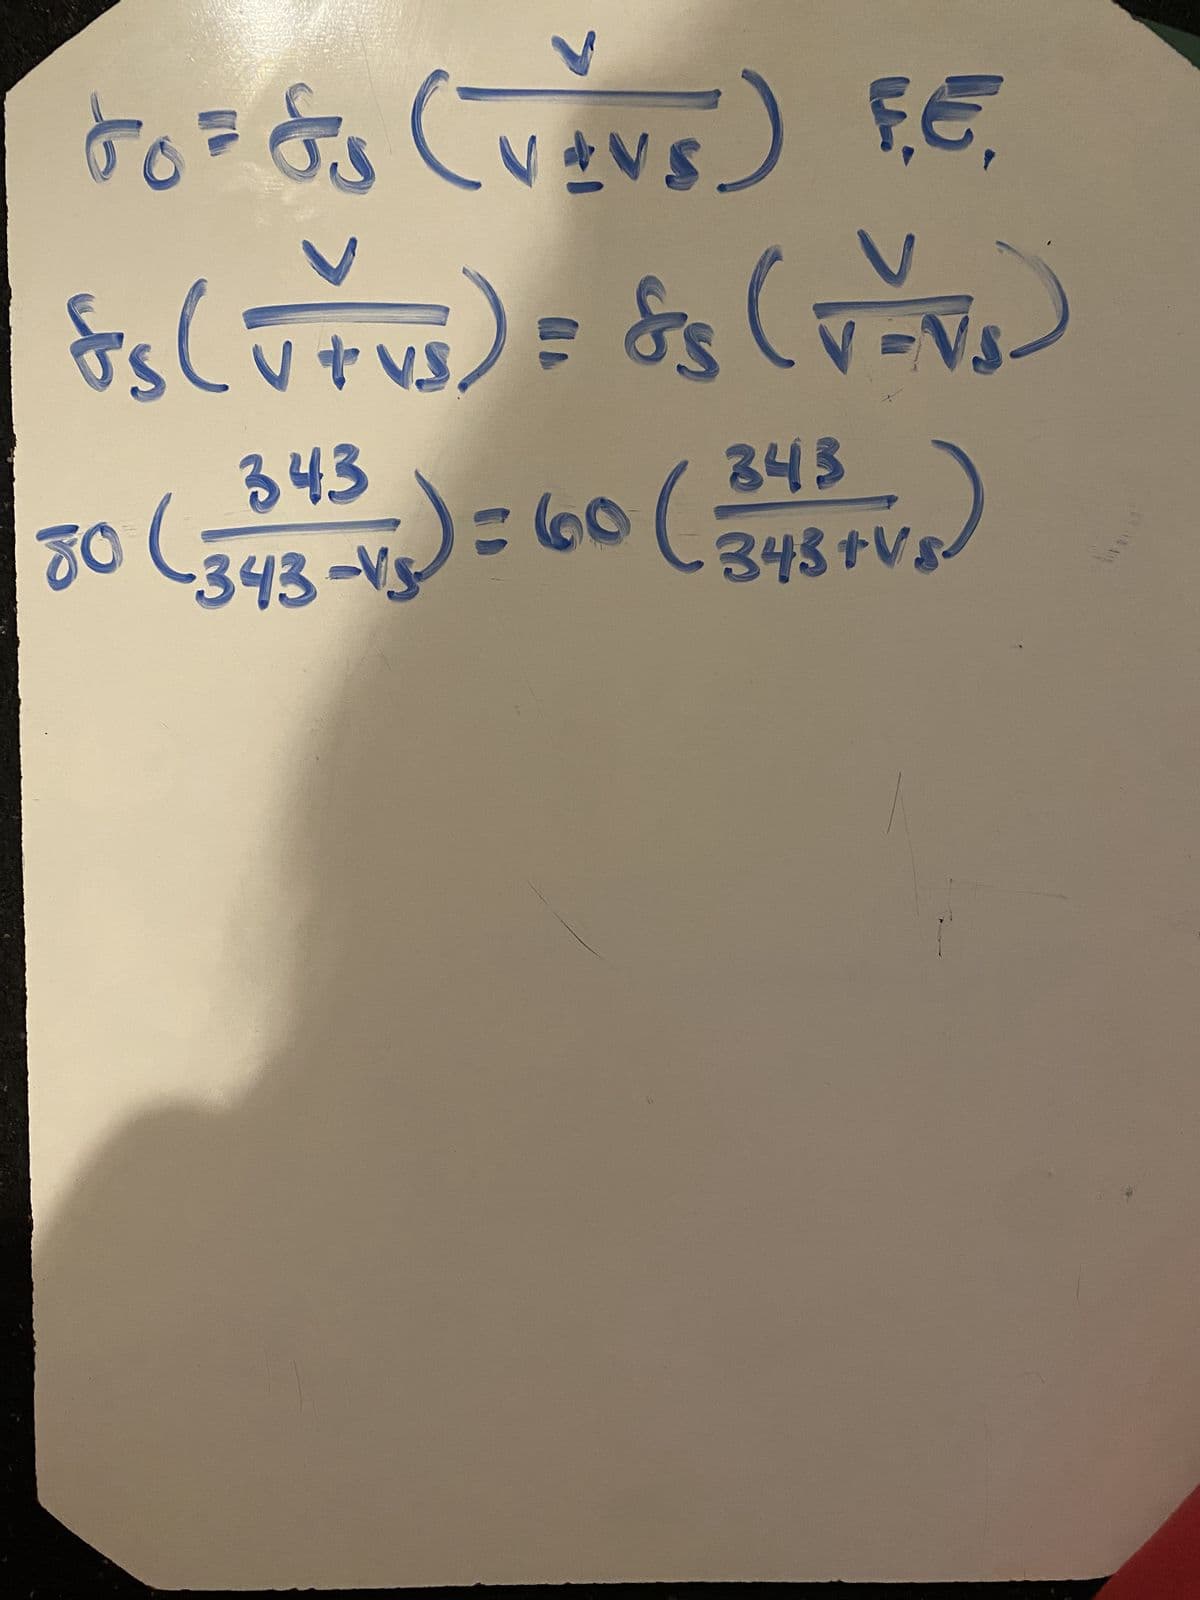 To=&S (V+VS) FE,
&s (V+vs) = 88 (V-√₂)
N
343
80
(343-15) = 60 (348+V₂)